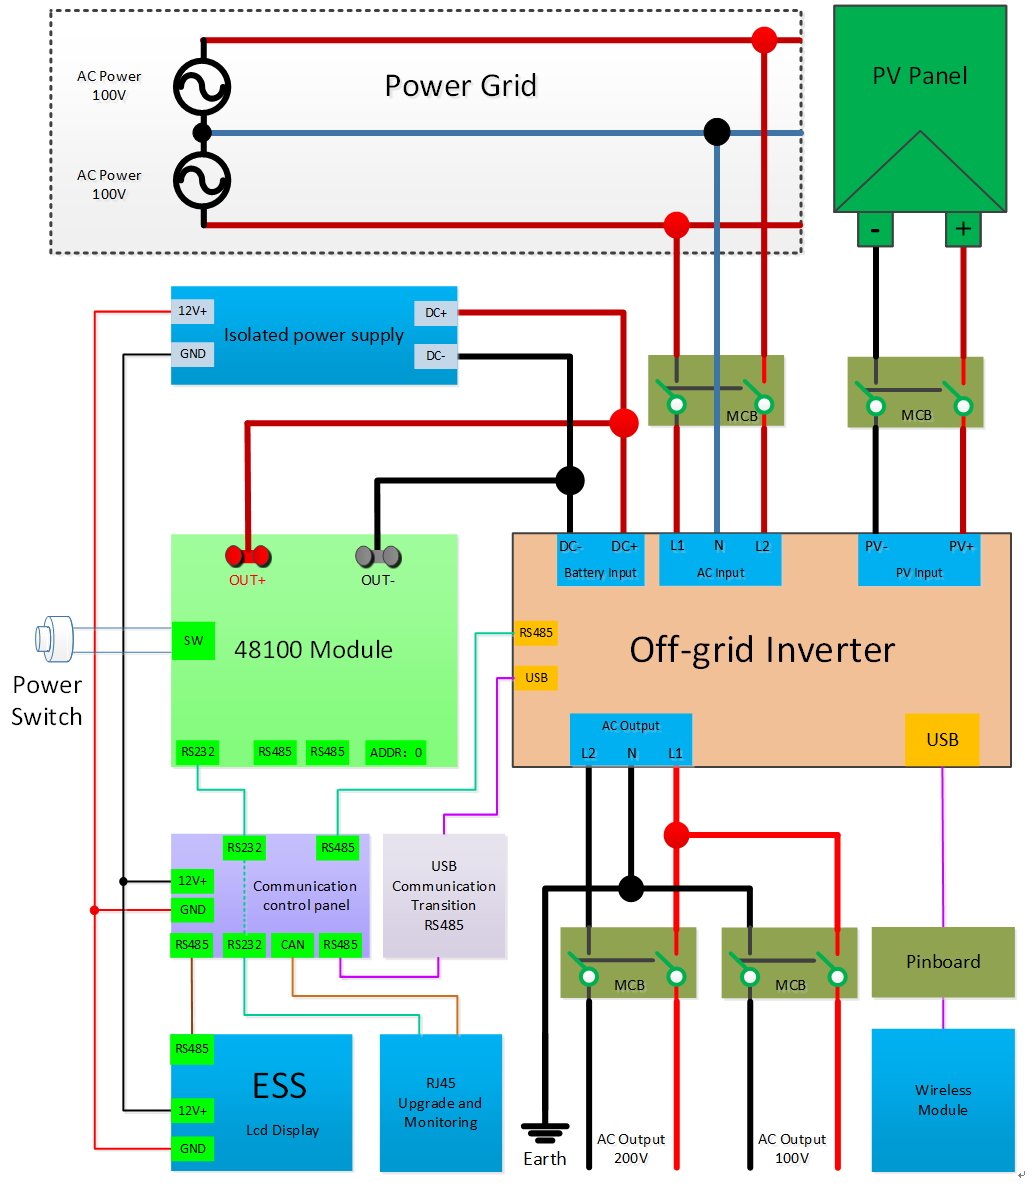 powermax pm3 55lk wiring diagram